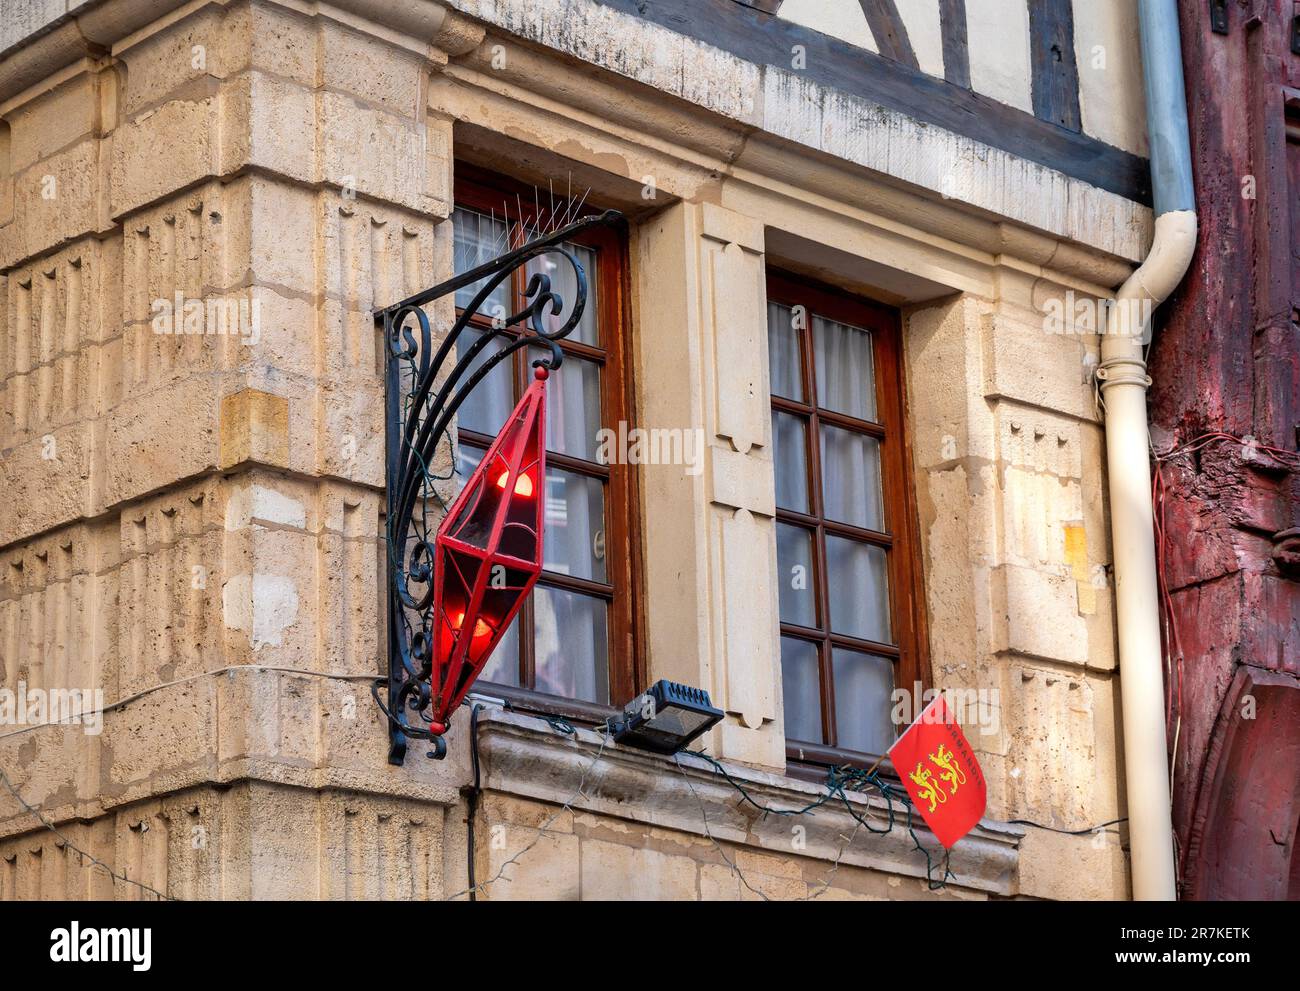 Beleuchtetes Wahrzeichen und Flagge der Normandie in einem historischen bürgerlichen Haus in der Stadt Rouen, Frankreich Stockfoto